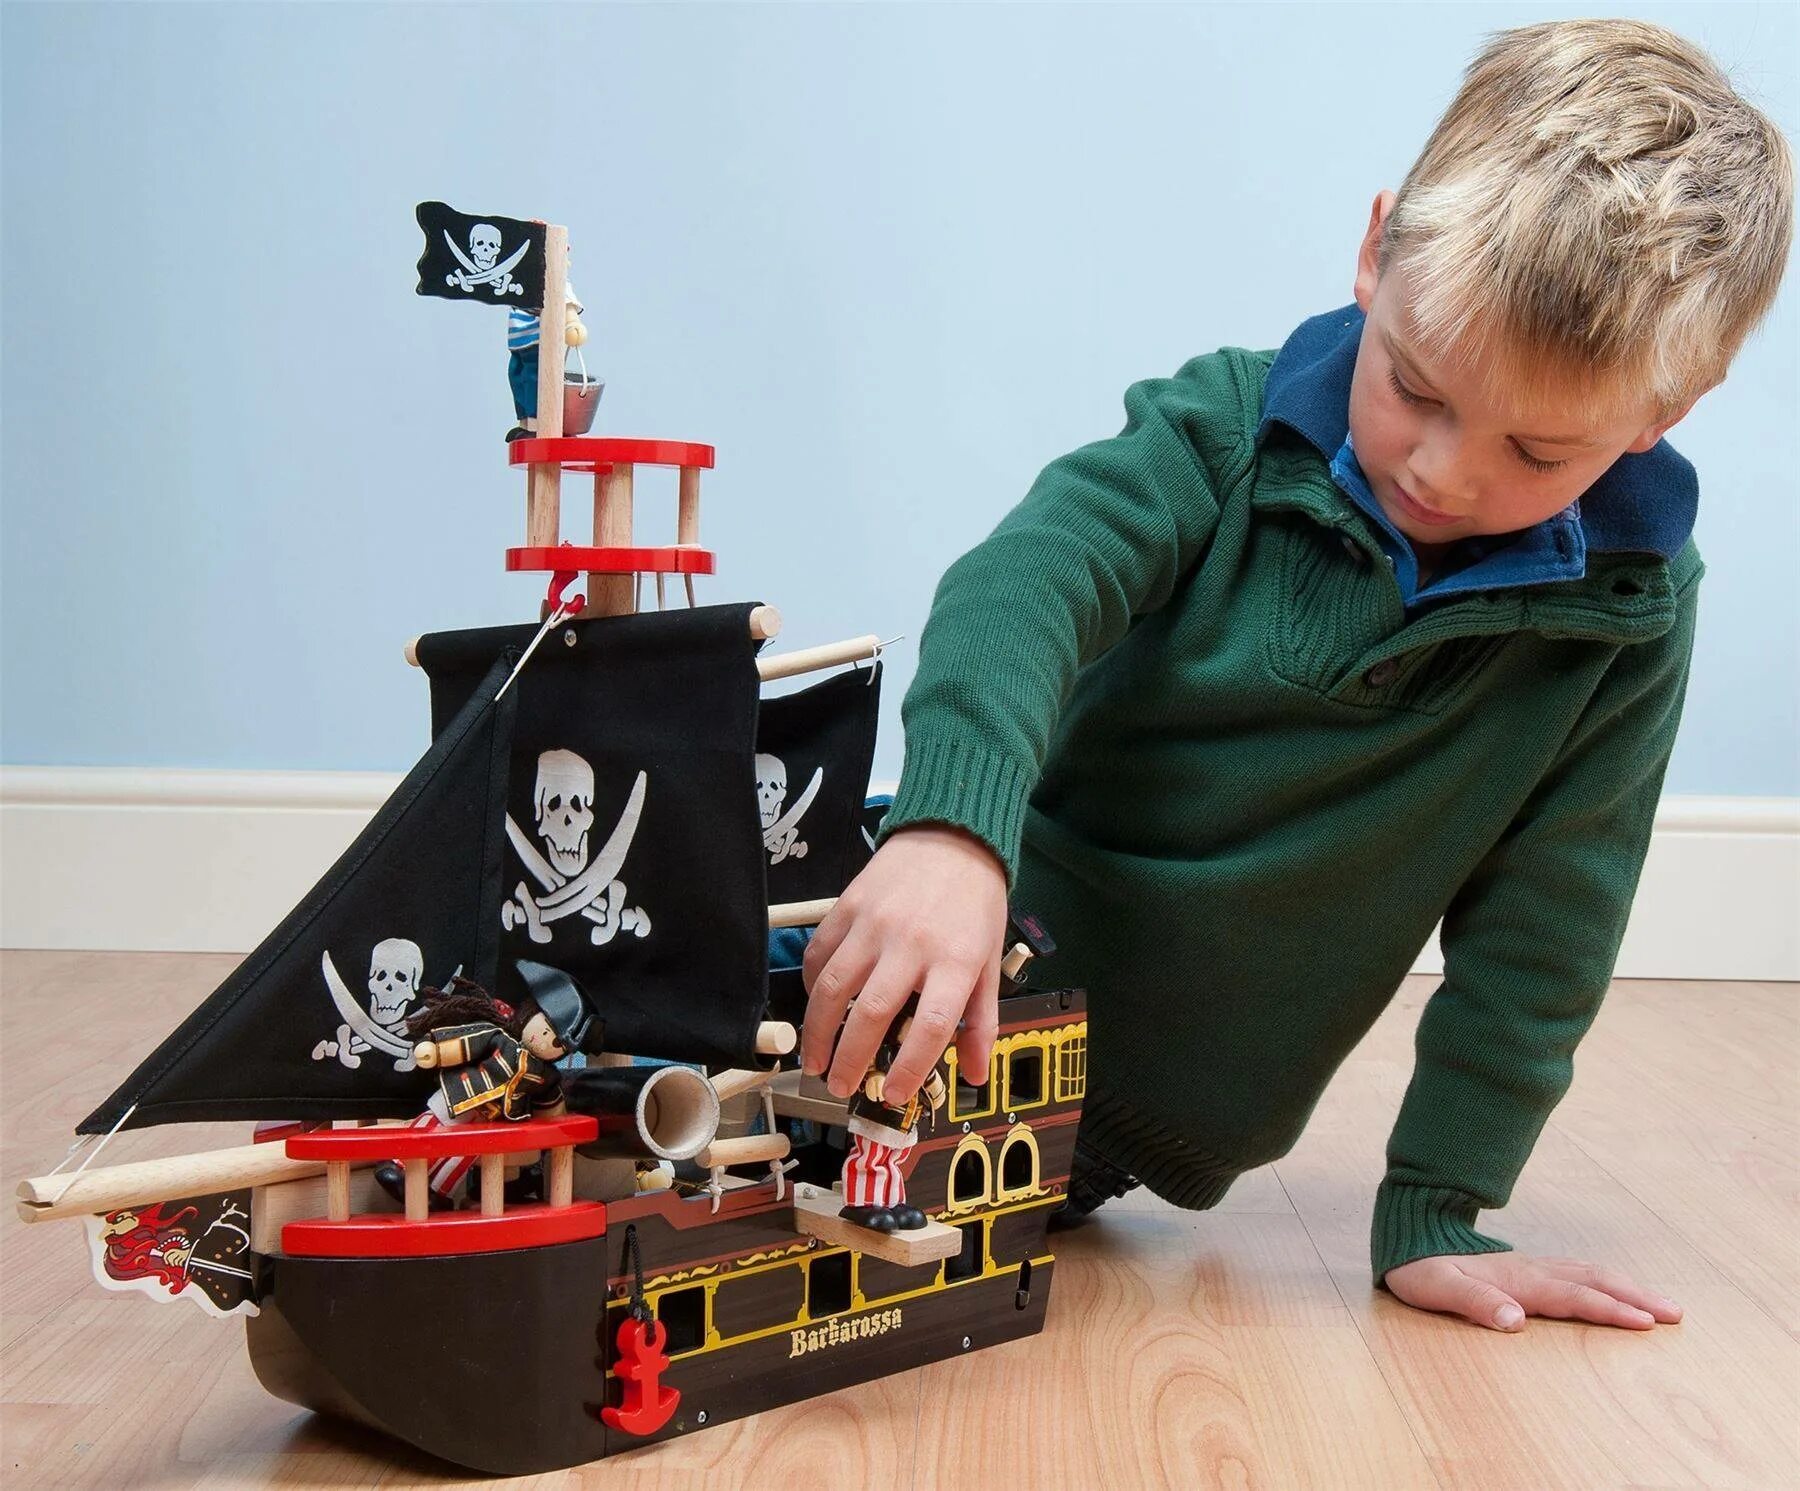 Идеи подарка мальчику 7. Пиратский корабль Барбаросса, le Toy van. Игровой набор пиратский корабль Барбаросса le Toy van tv246. Подарок мальчику. Необычные игрушки для мальчиков.